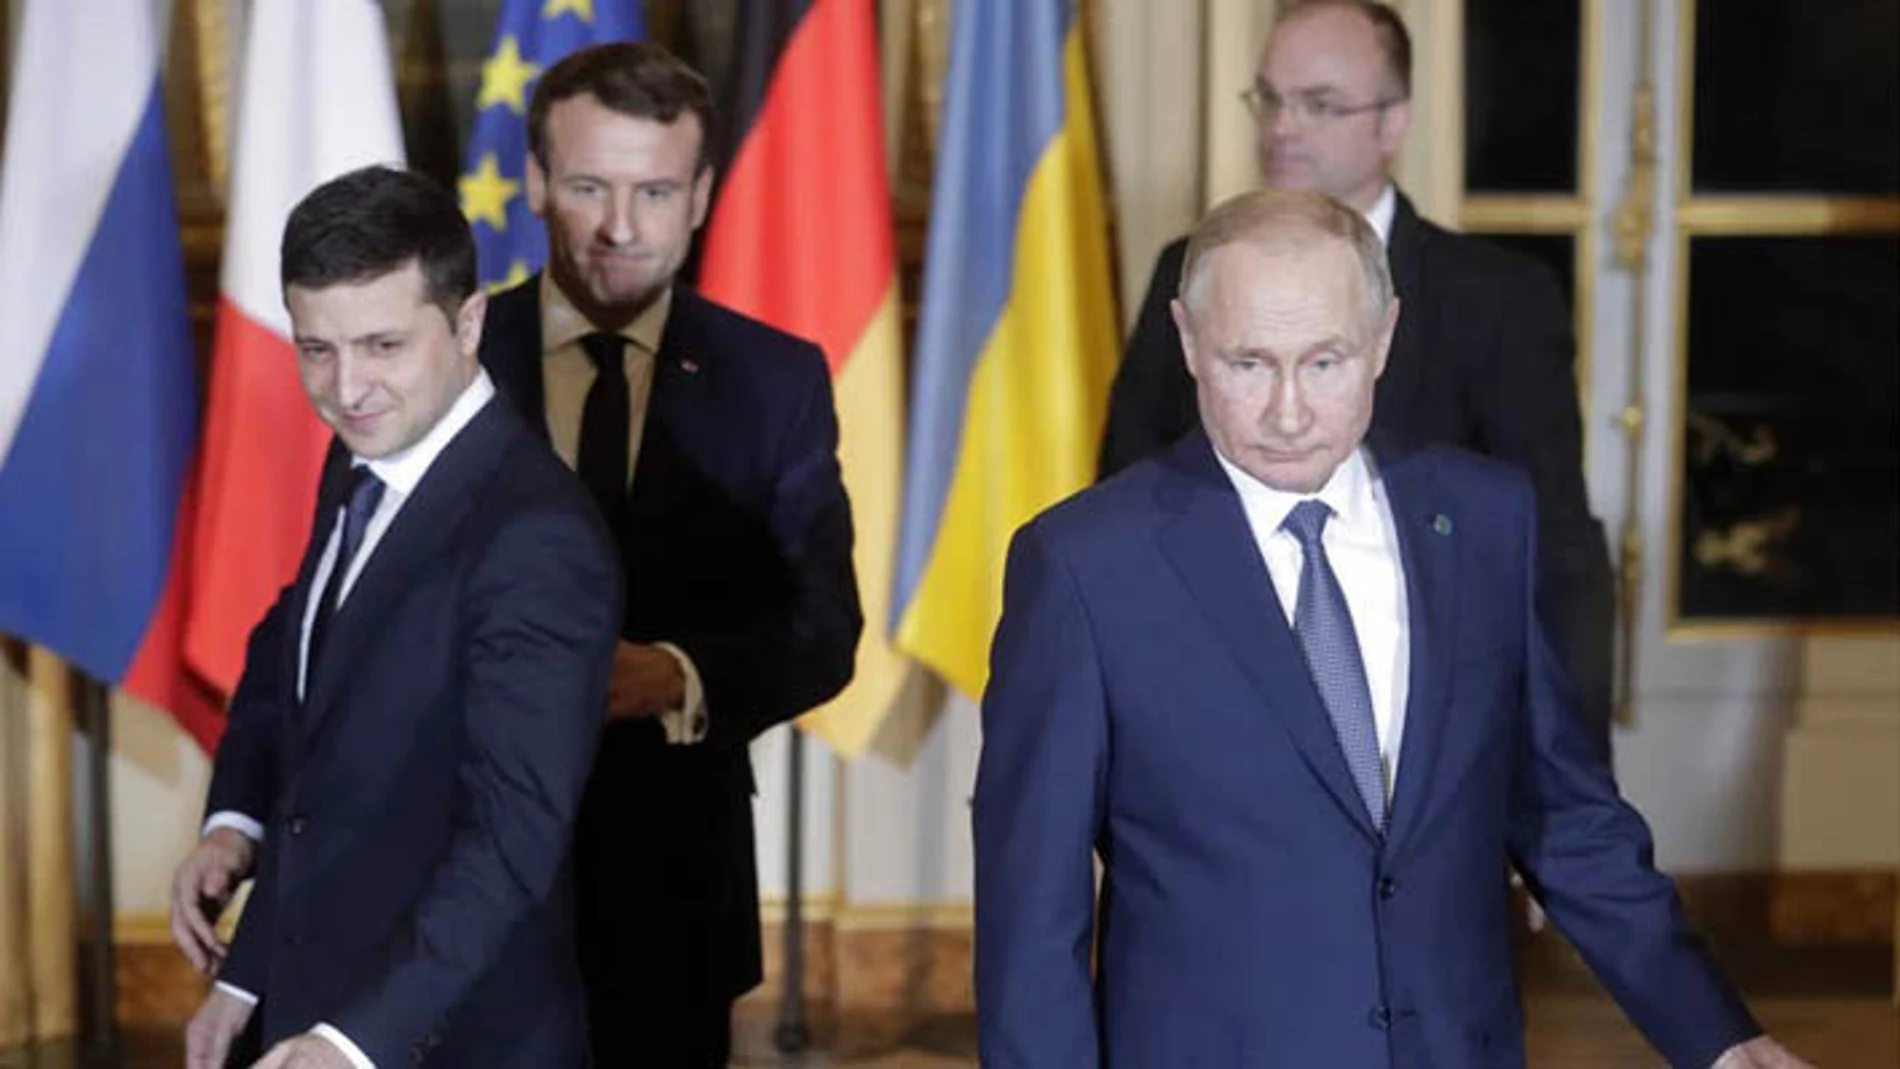 El presidente de Ucrania, Volodimir Zelenski, y su homólogo ruso, Vladimir Putin, podrían verse las caras en una reunión entre ambos líderes con motivo de la invasión en territorio ucraniano